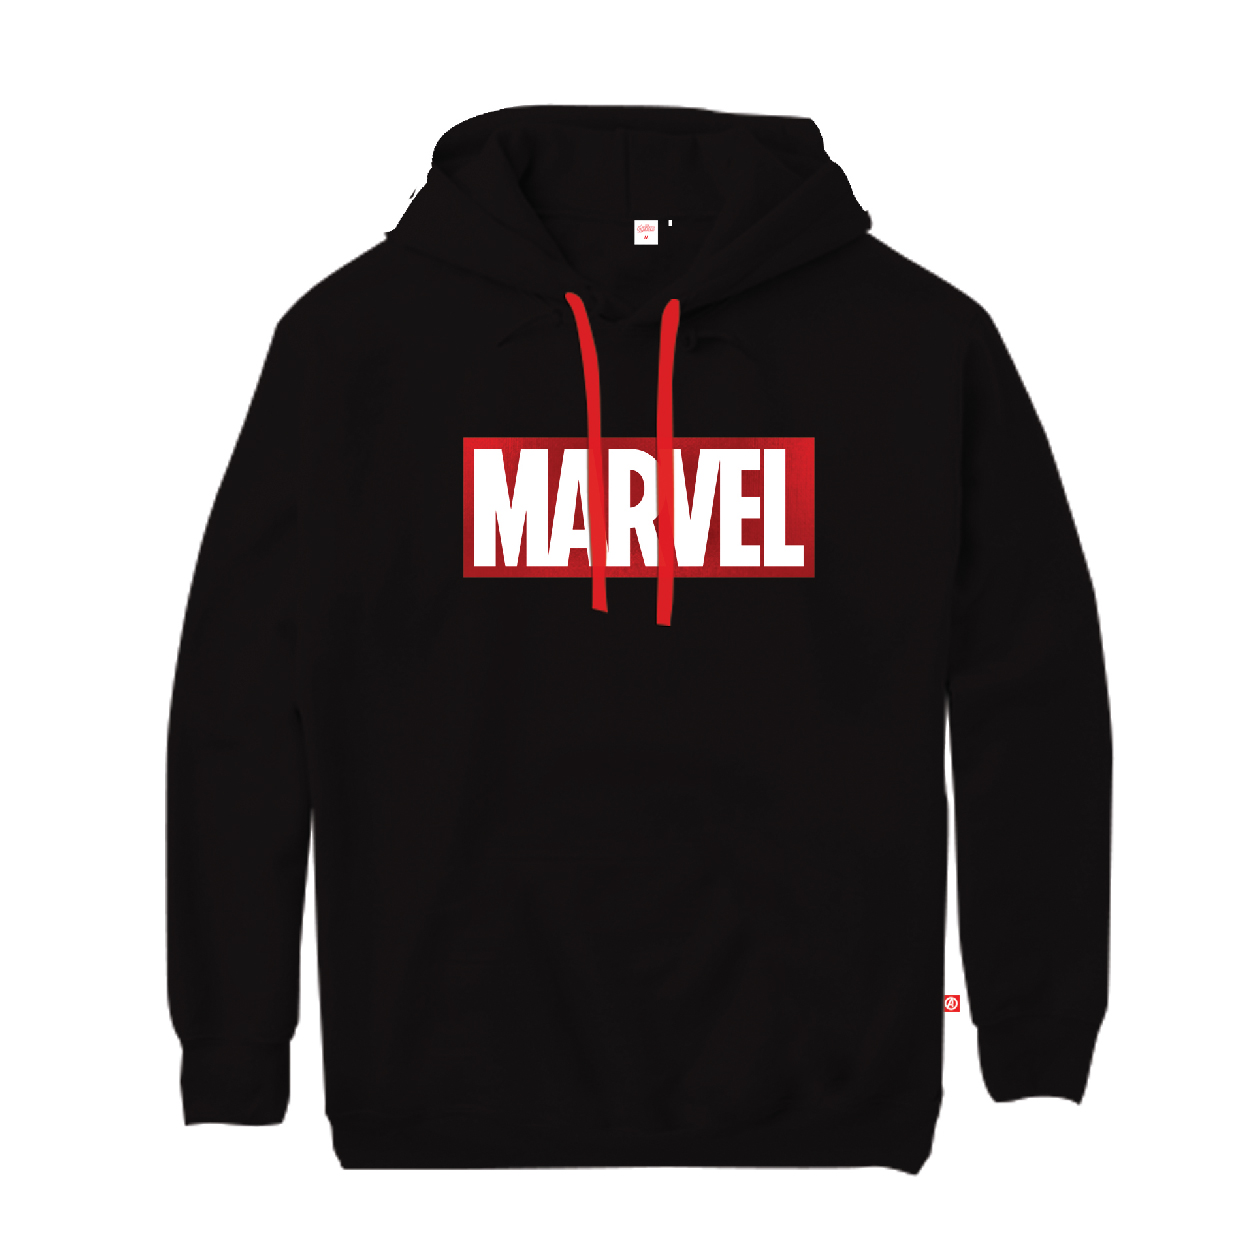 Marvel Unisex Logo Sweater I COMMON SENSE